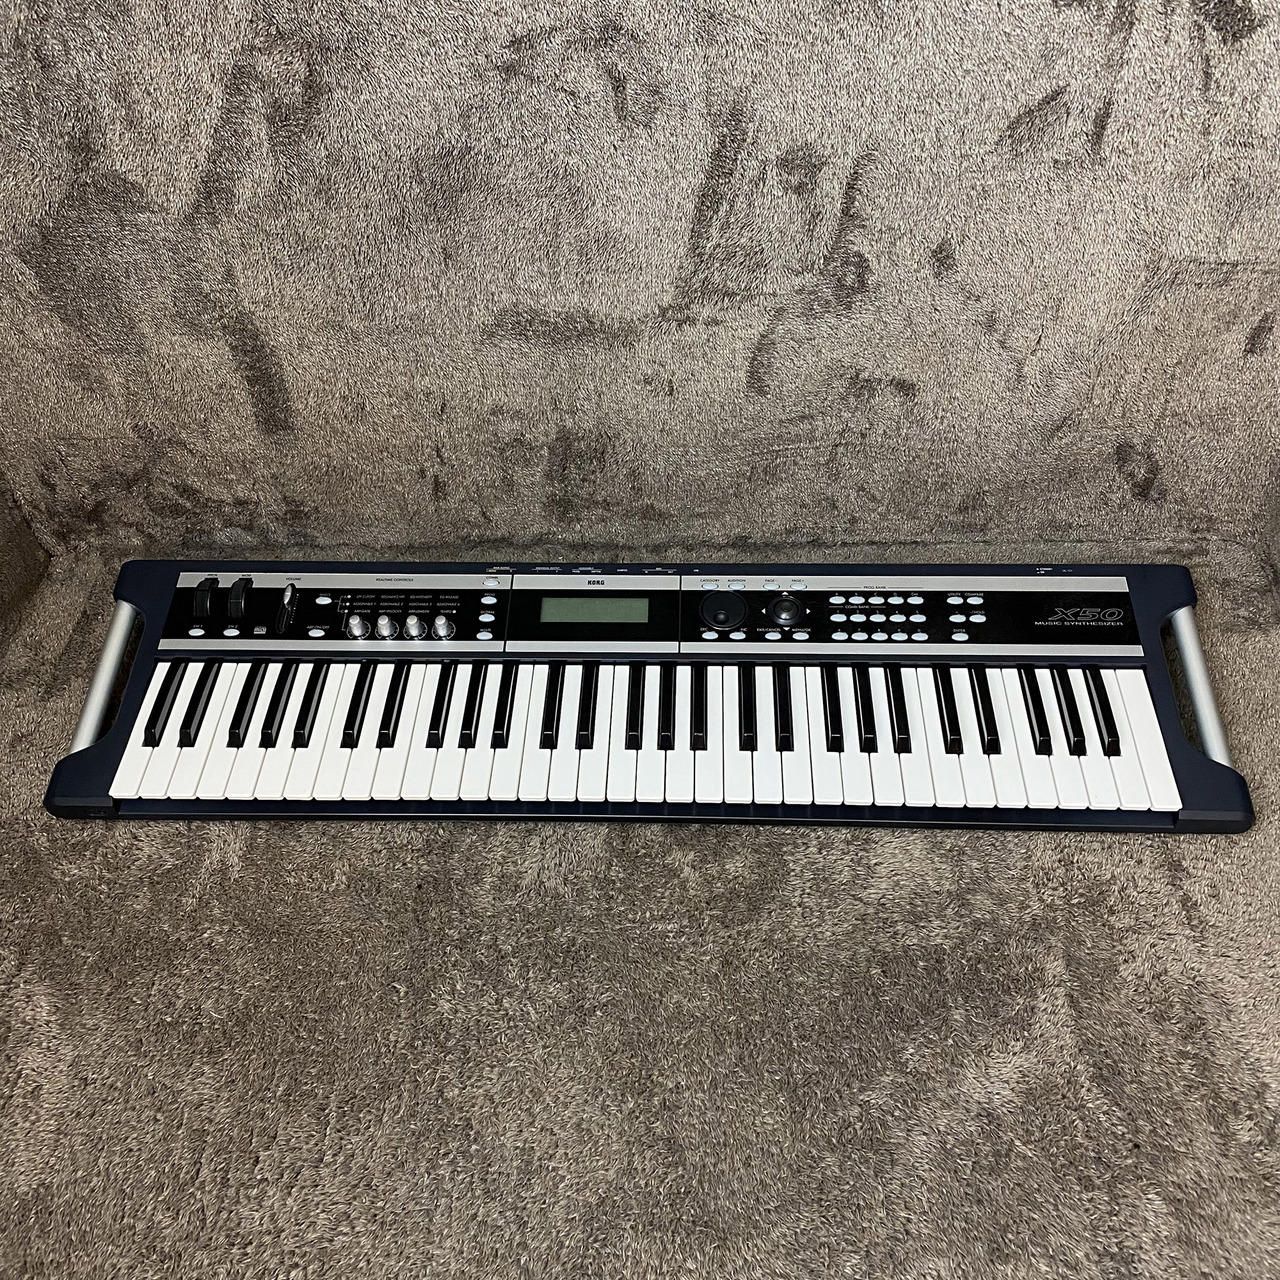 タイプデジタルKORG X50 シンセサイザー 電子ピアノ - 鍵盤楽器